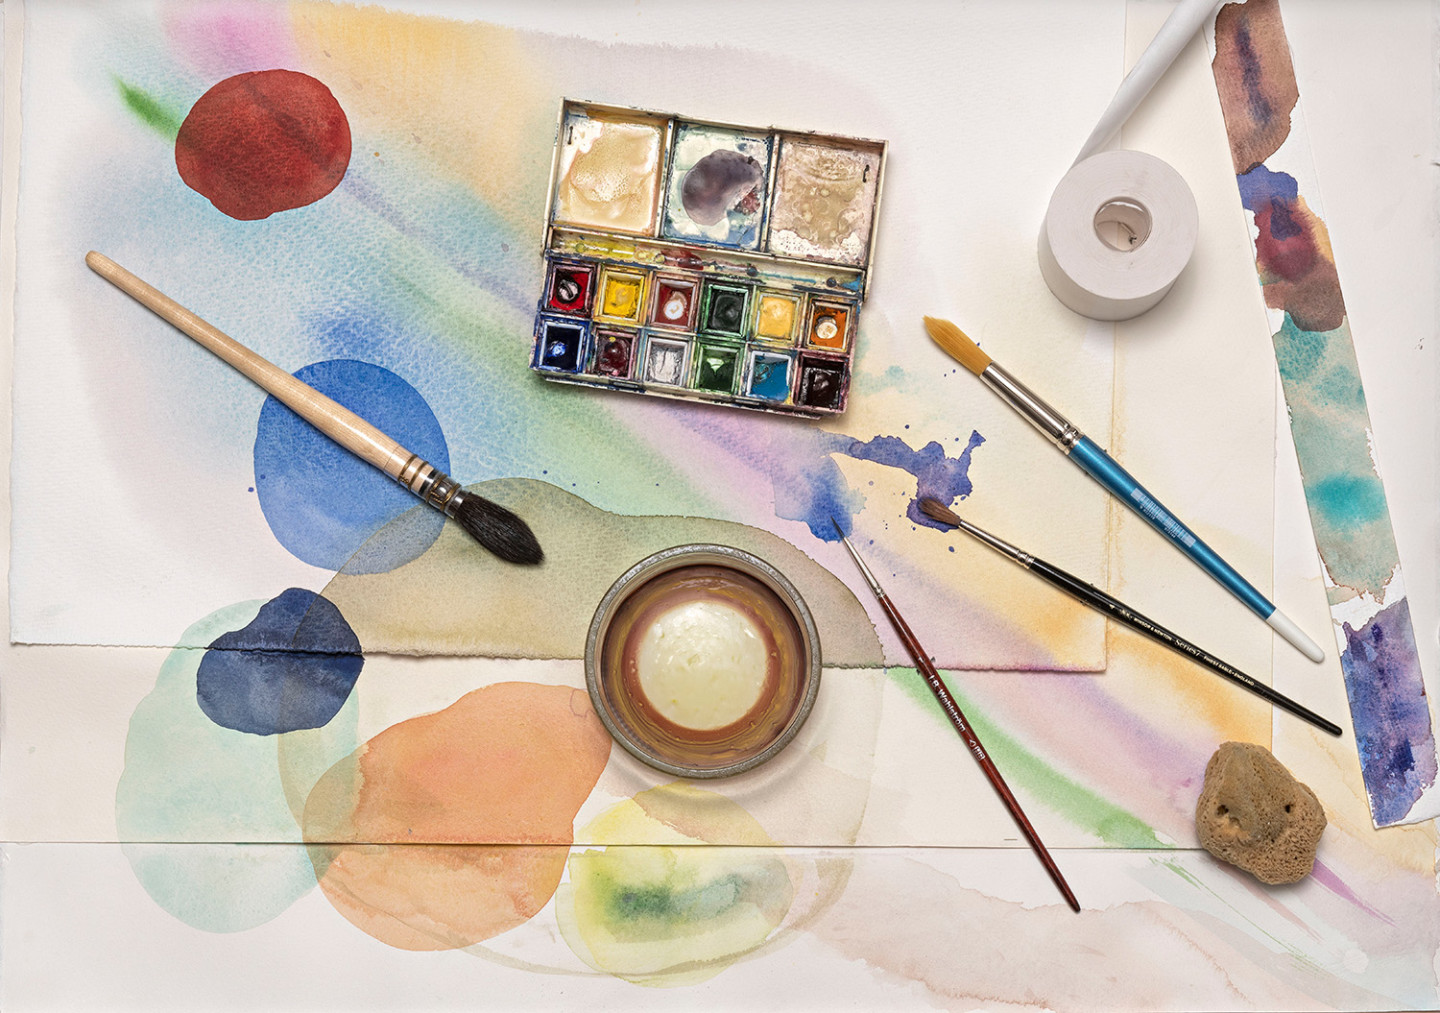 Akvarellmåleri med cirklar i olika färger. Runt målningen ligger det penslar, en palett, maskeringstejp och ett glas med vatten.